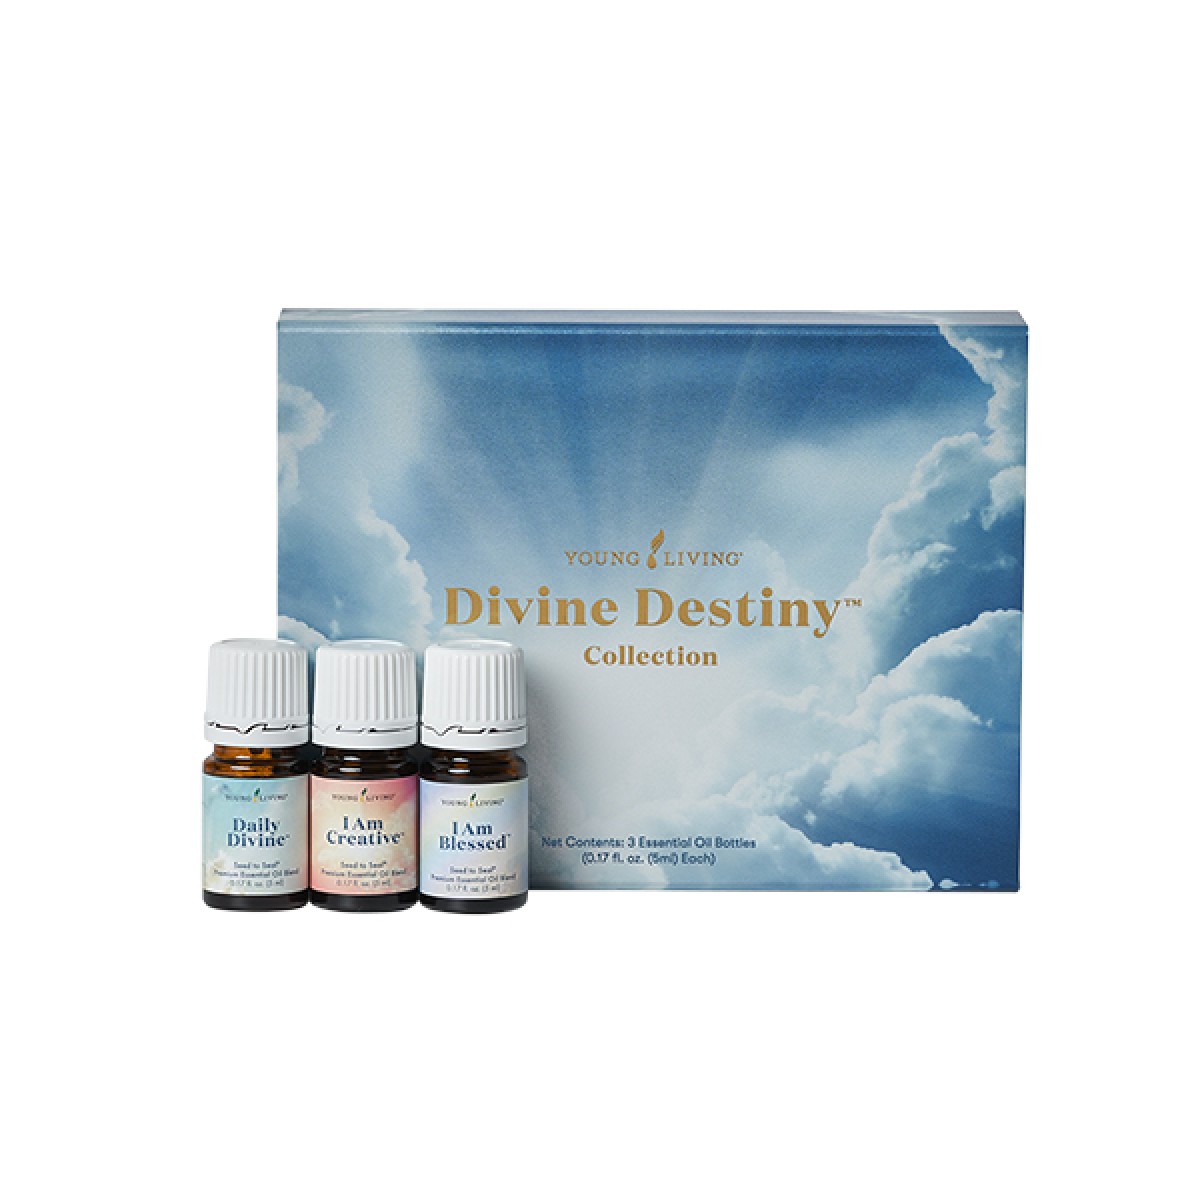 Divine Destiny collection